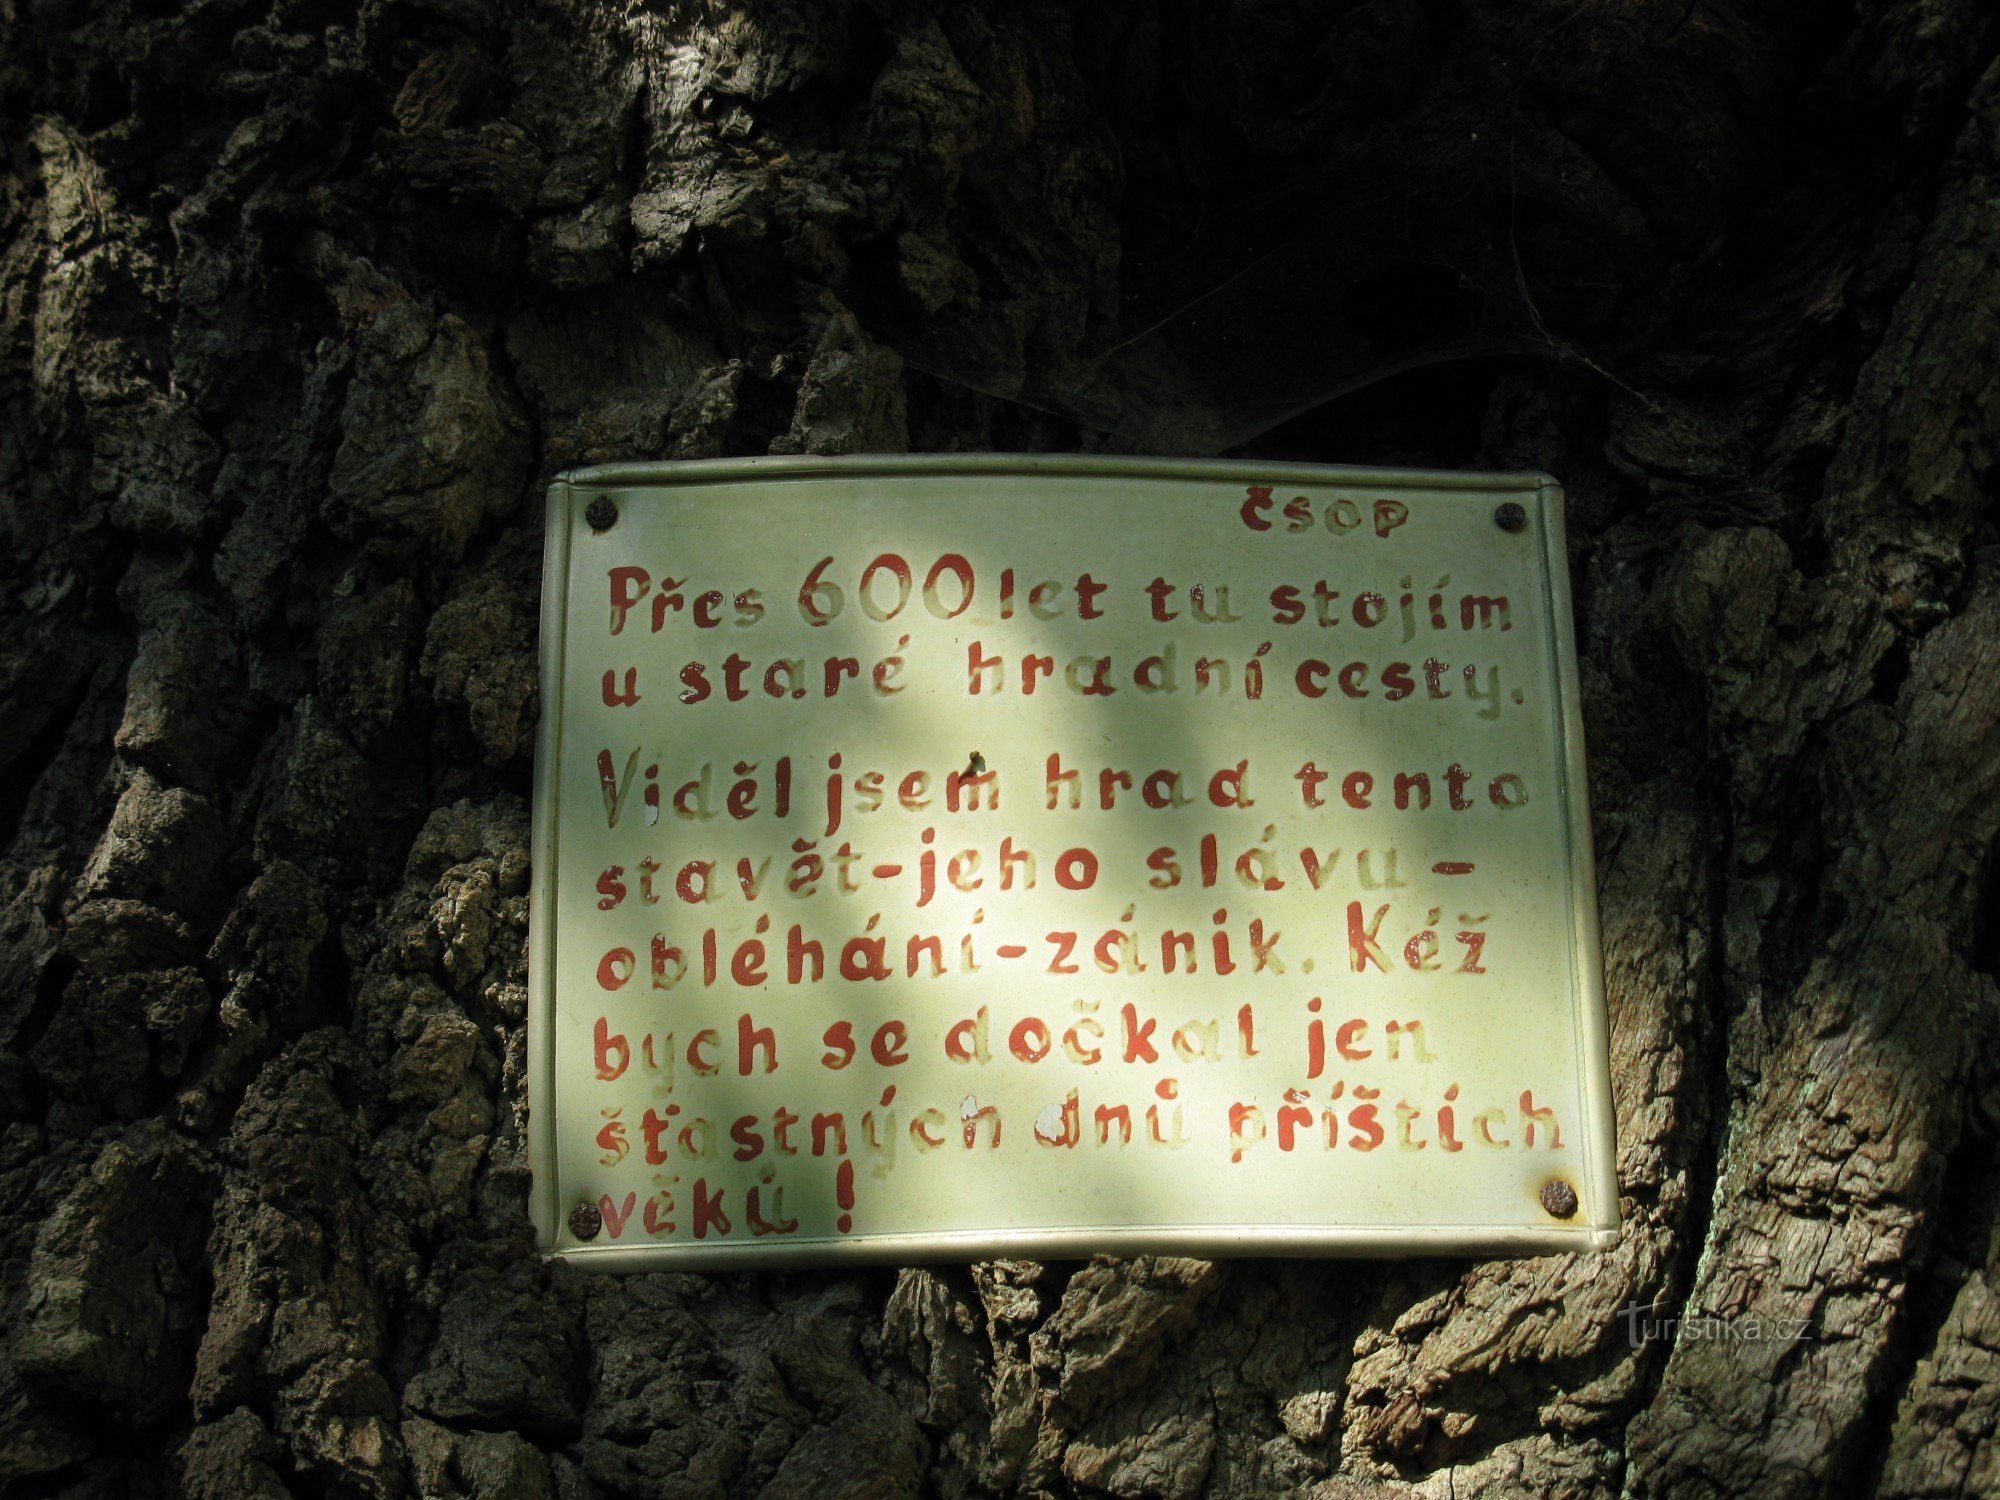 dòng chữ trên cây sồi